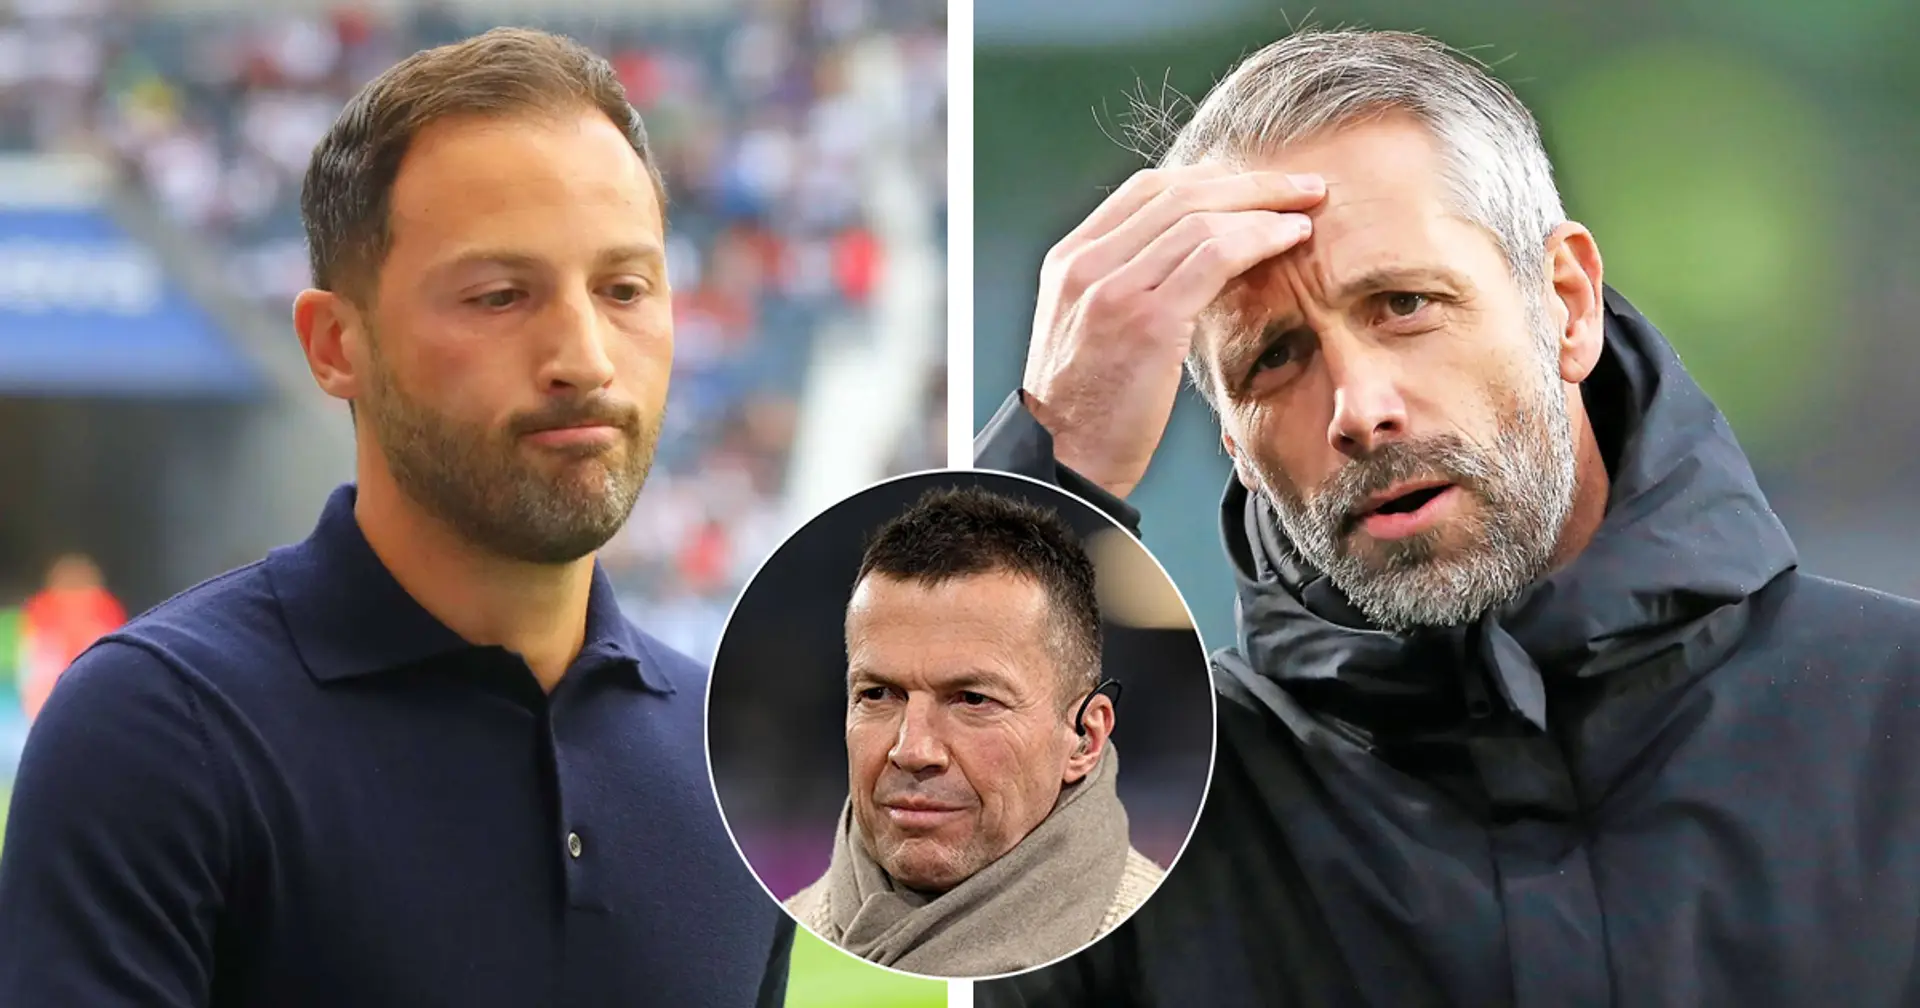 Matthäus bringt Rose als neuen RB-Coach ins Spiel - Wiedersehen mit BVB schon bald möglich?